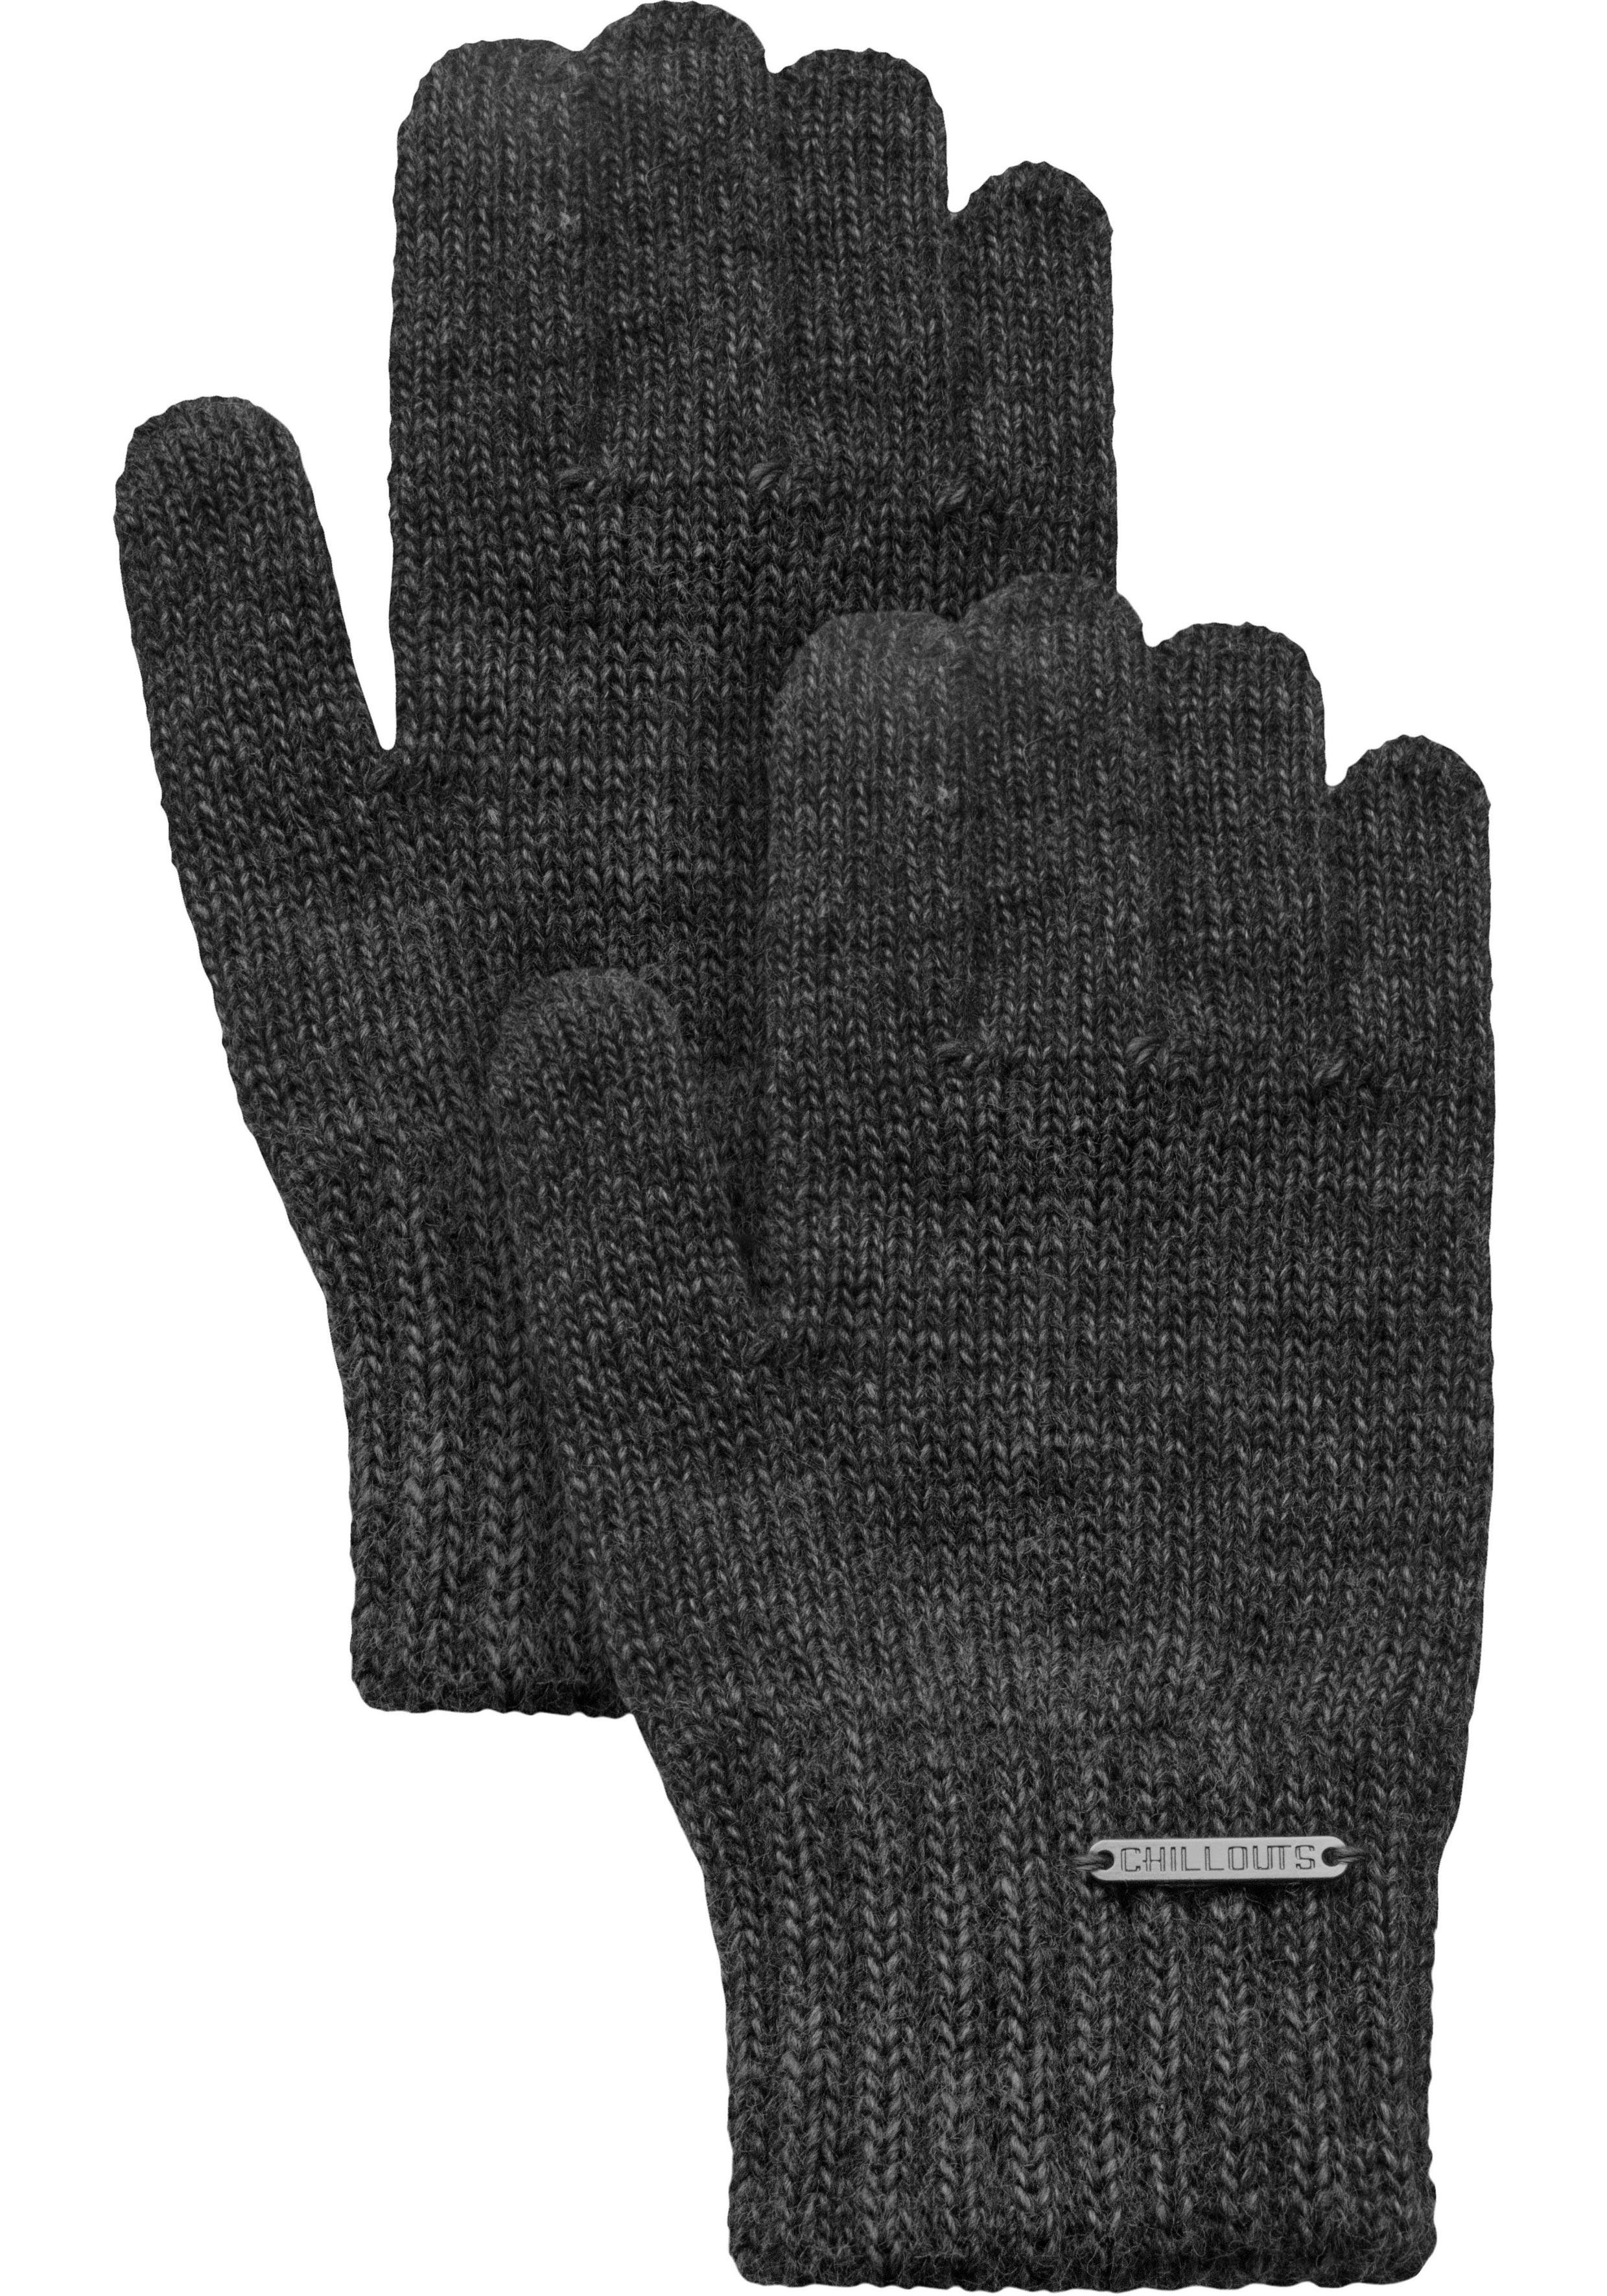 majestätisch chillouts Strickhandschuhe Jamila melange dark gestrickt grey Glove Fingerhandschuhe